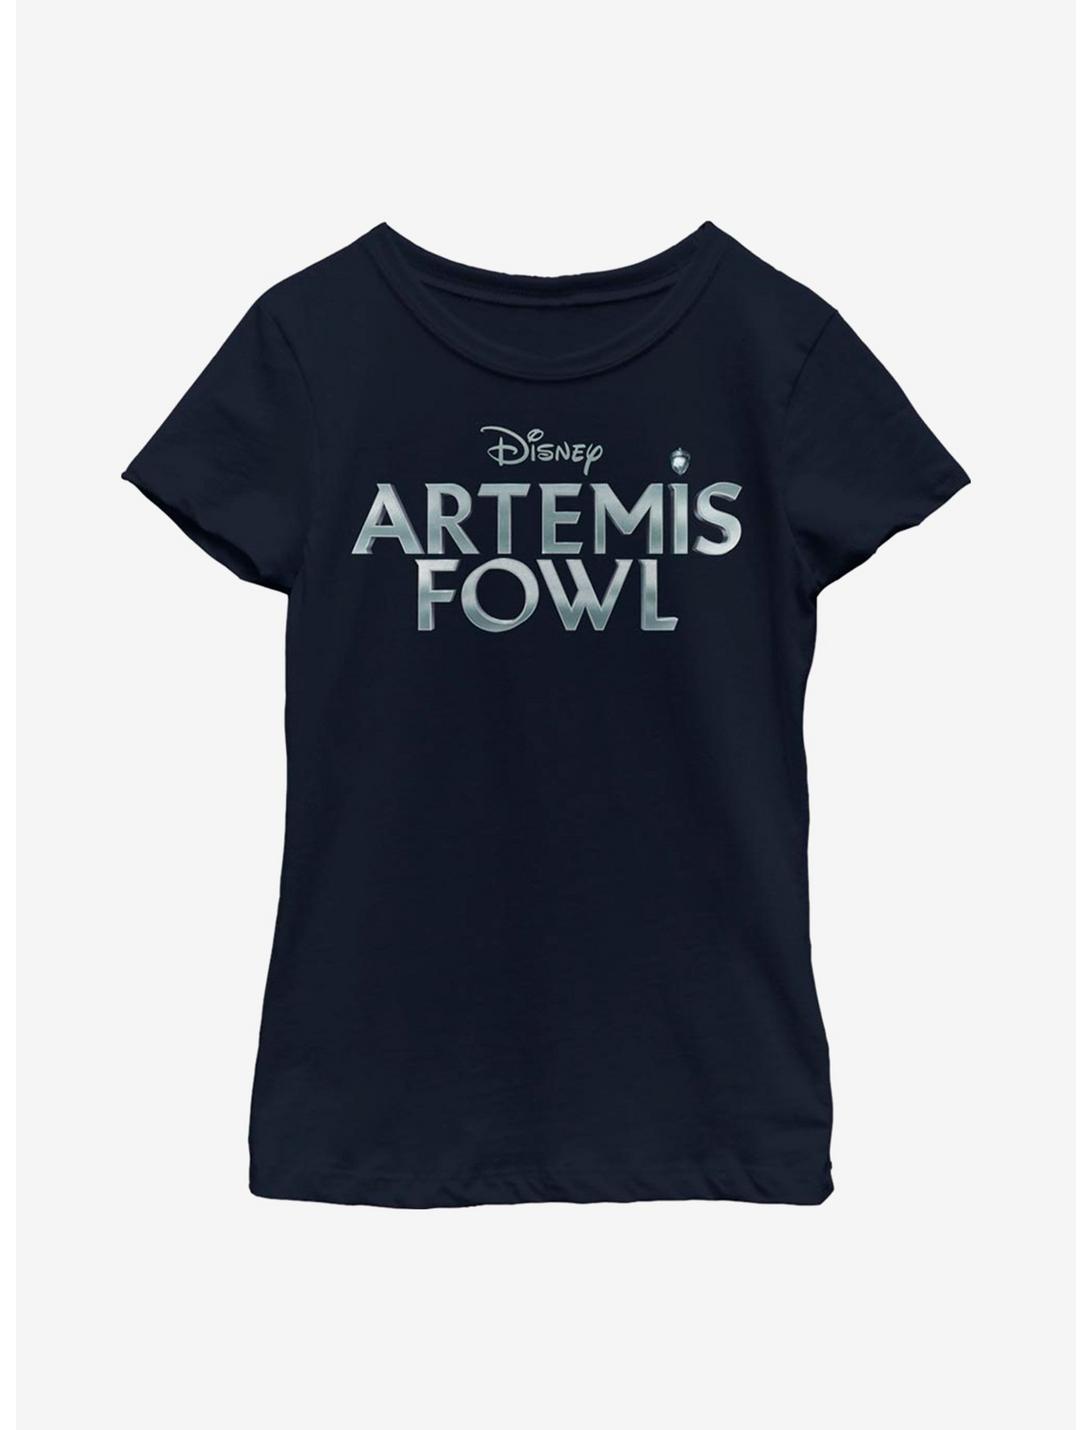 Disney Artemis Fowl Metallic Logo Youth Girls T-Shirt, NAVY, hi-res